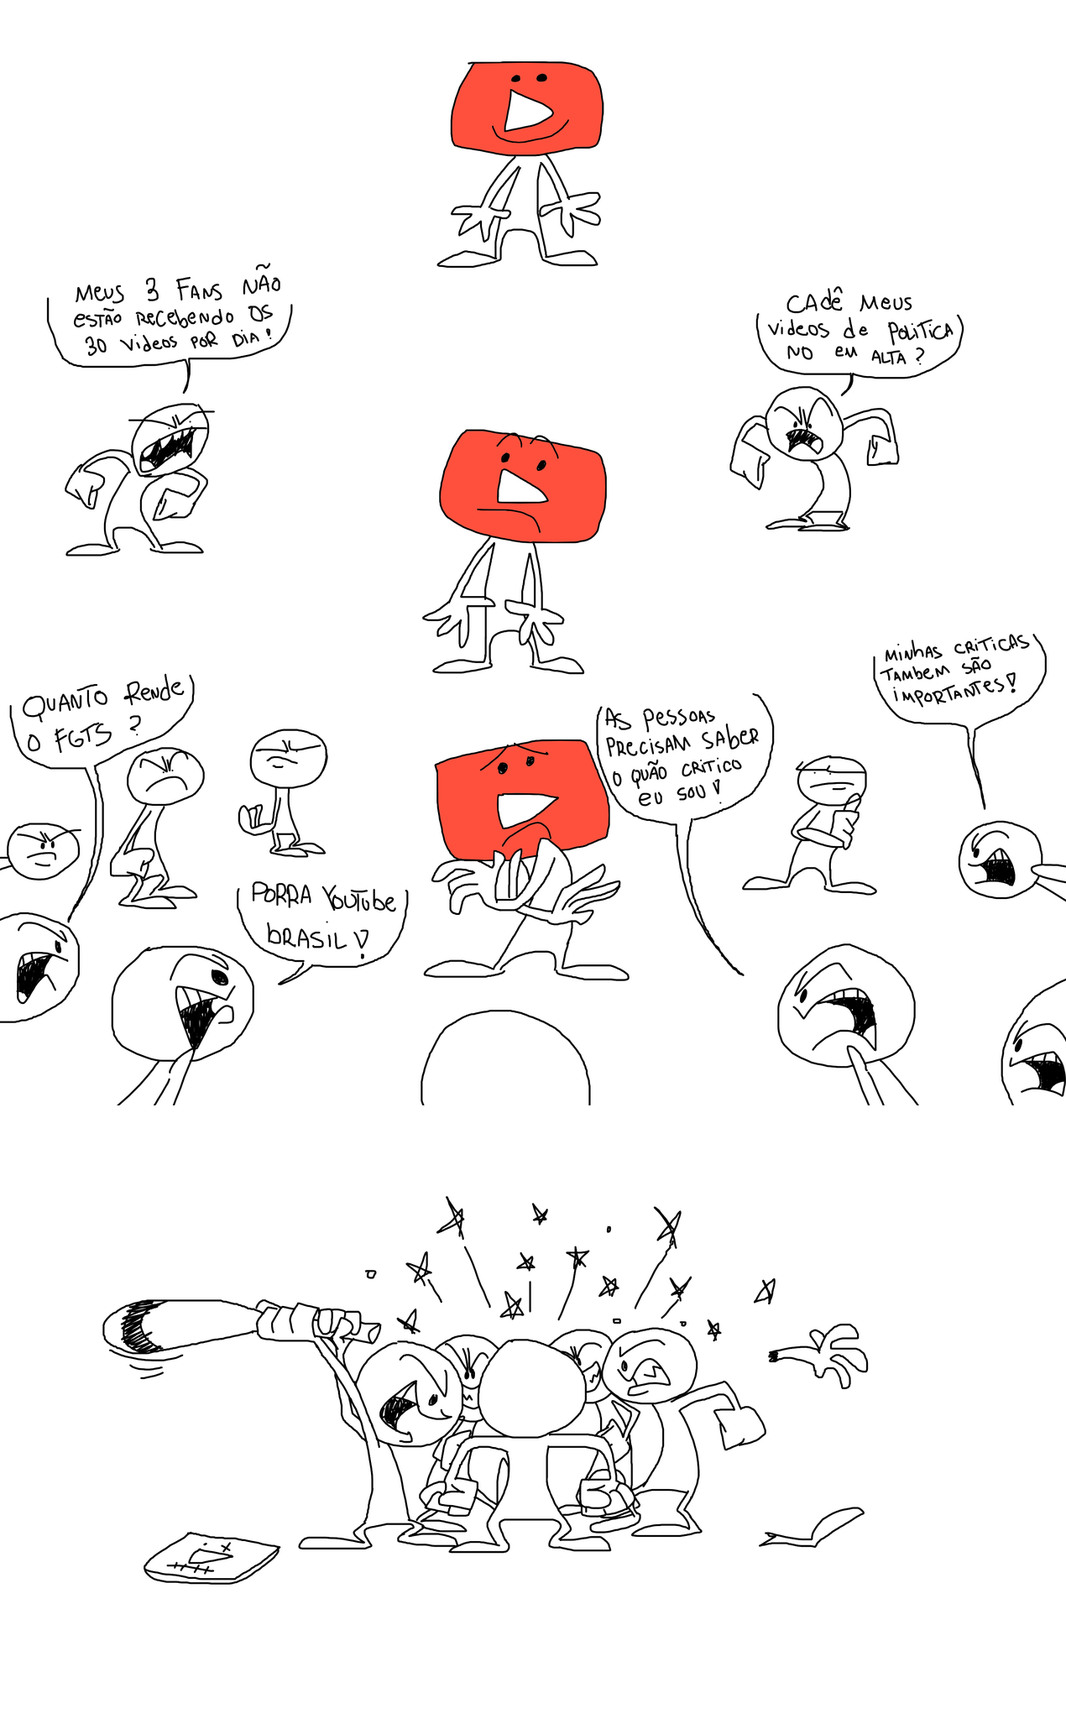 Youtube chan - meme